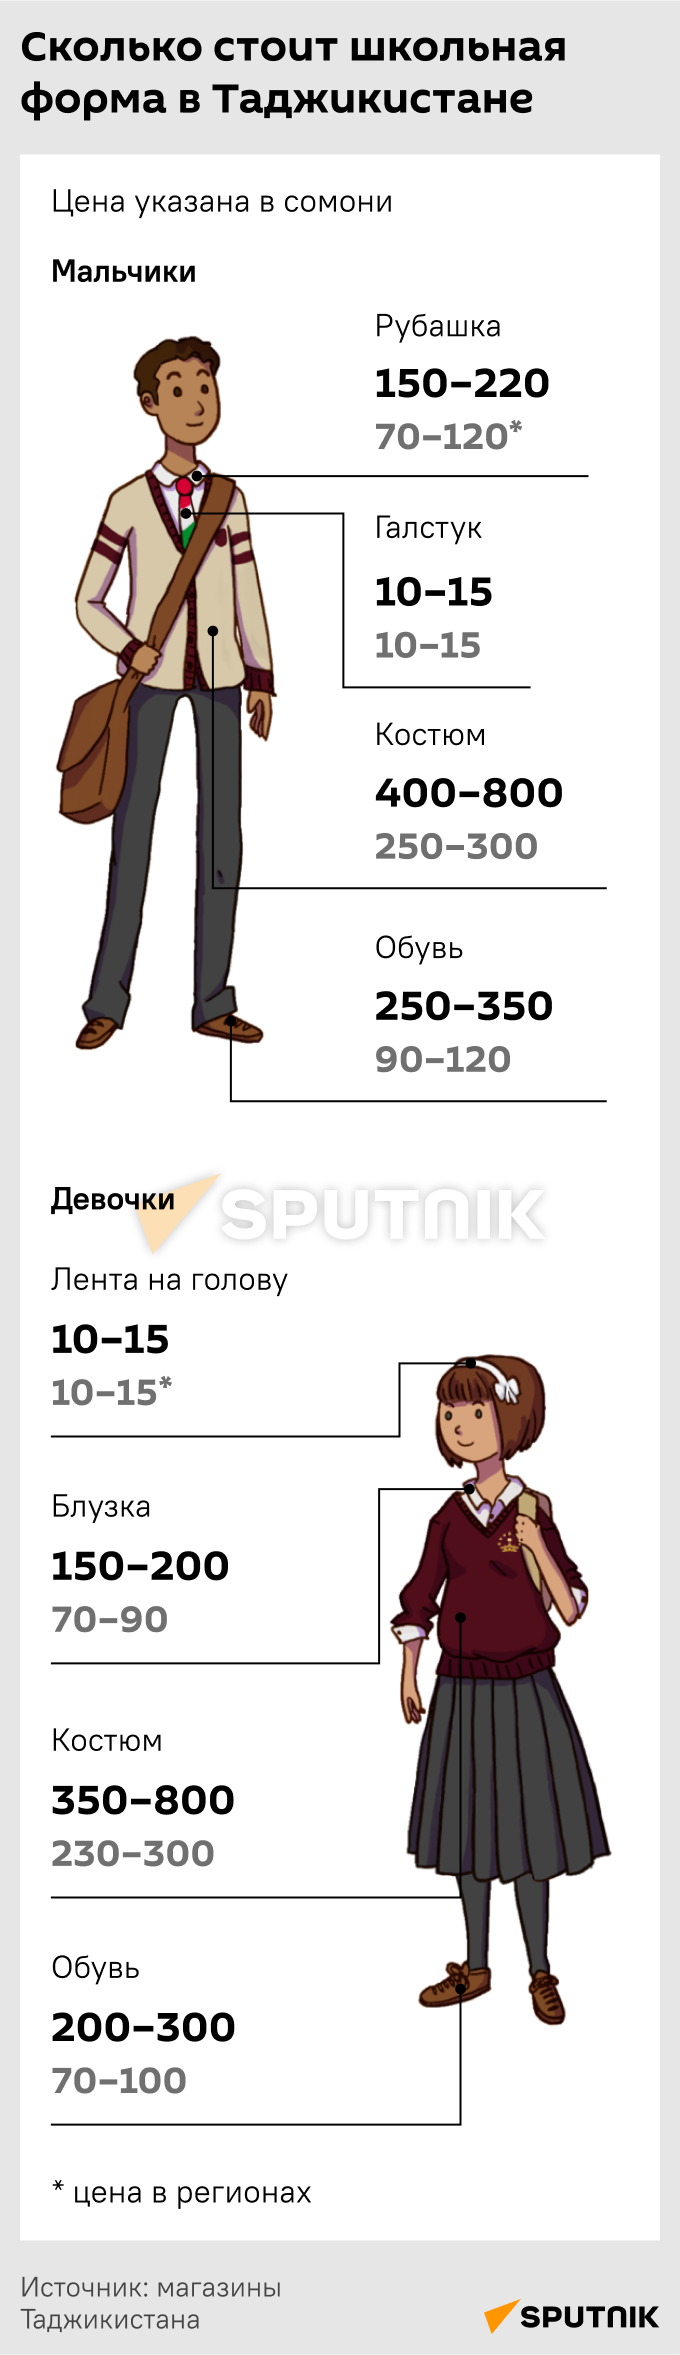 Сколько стоит школьная форма в Таджикистане - Sputnik Таджикистан